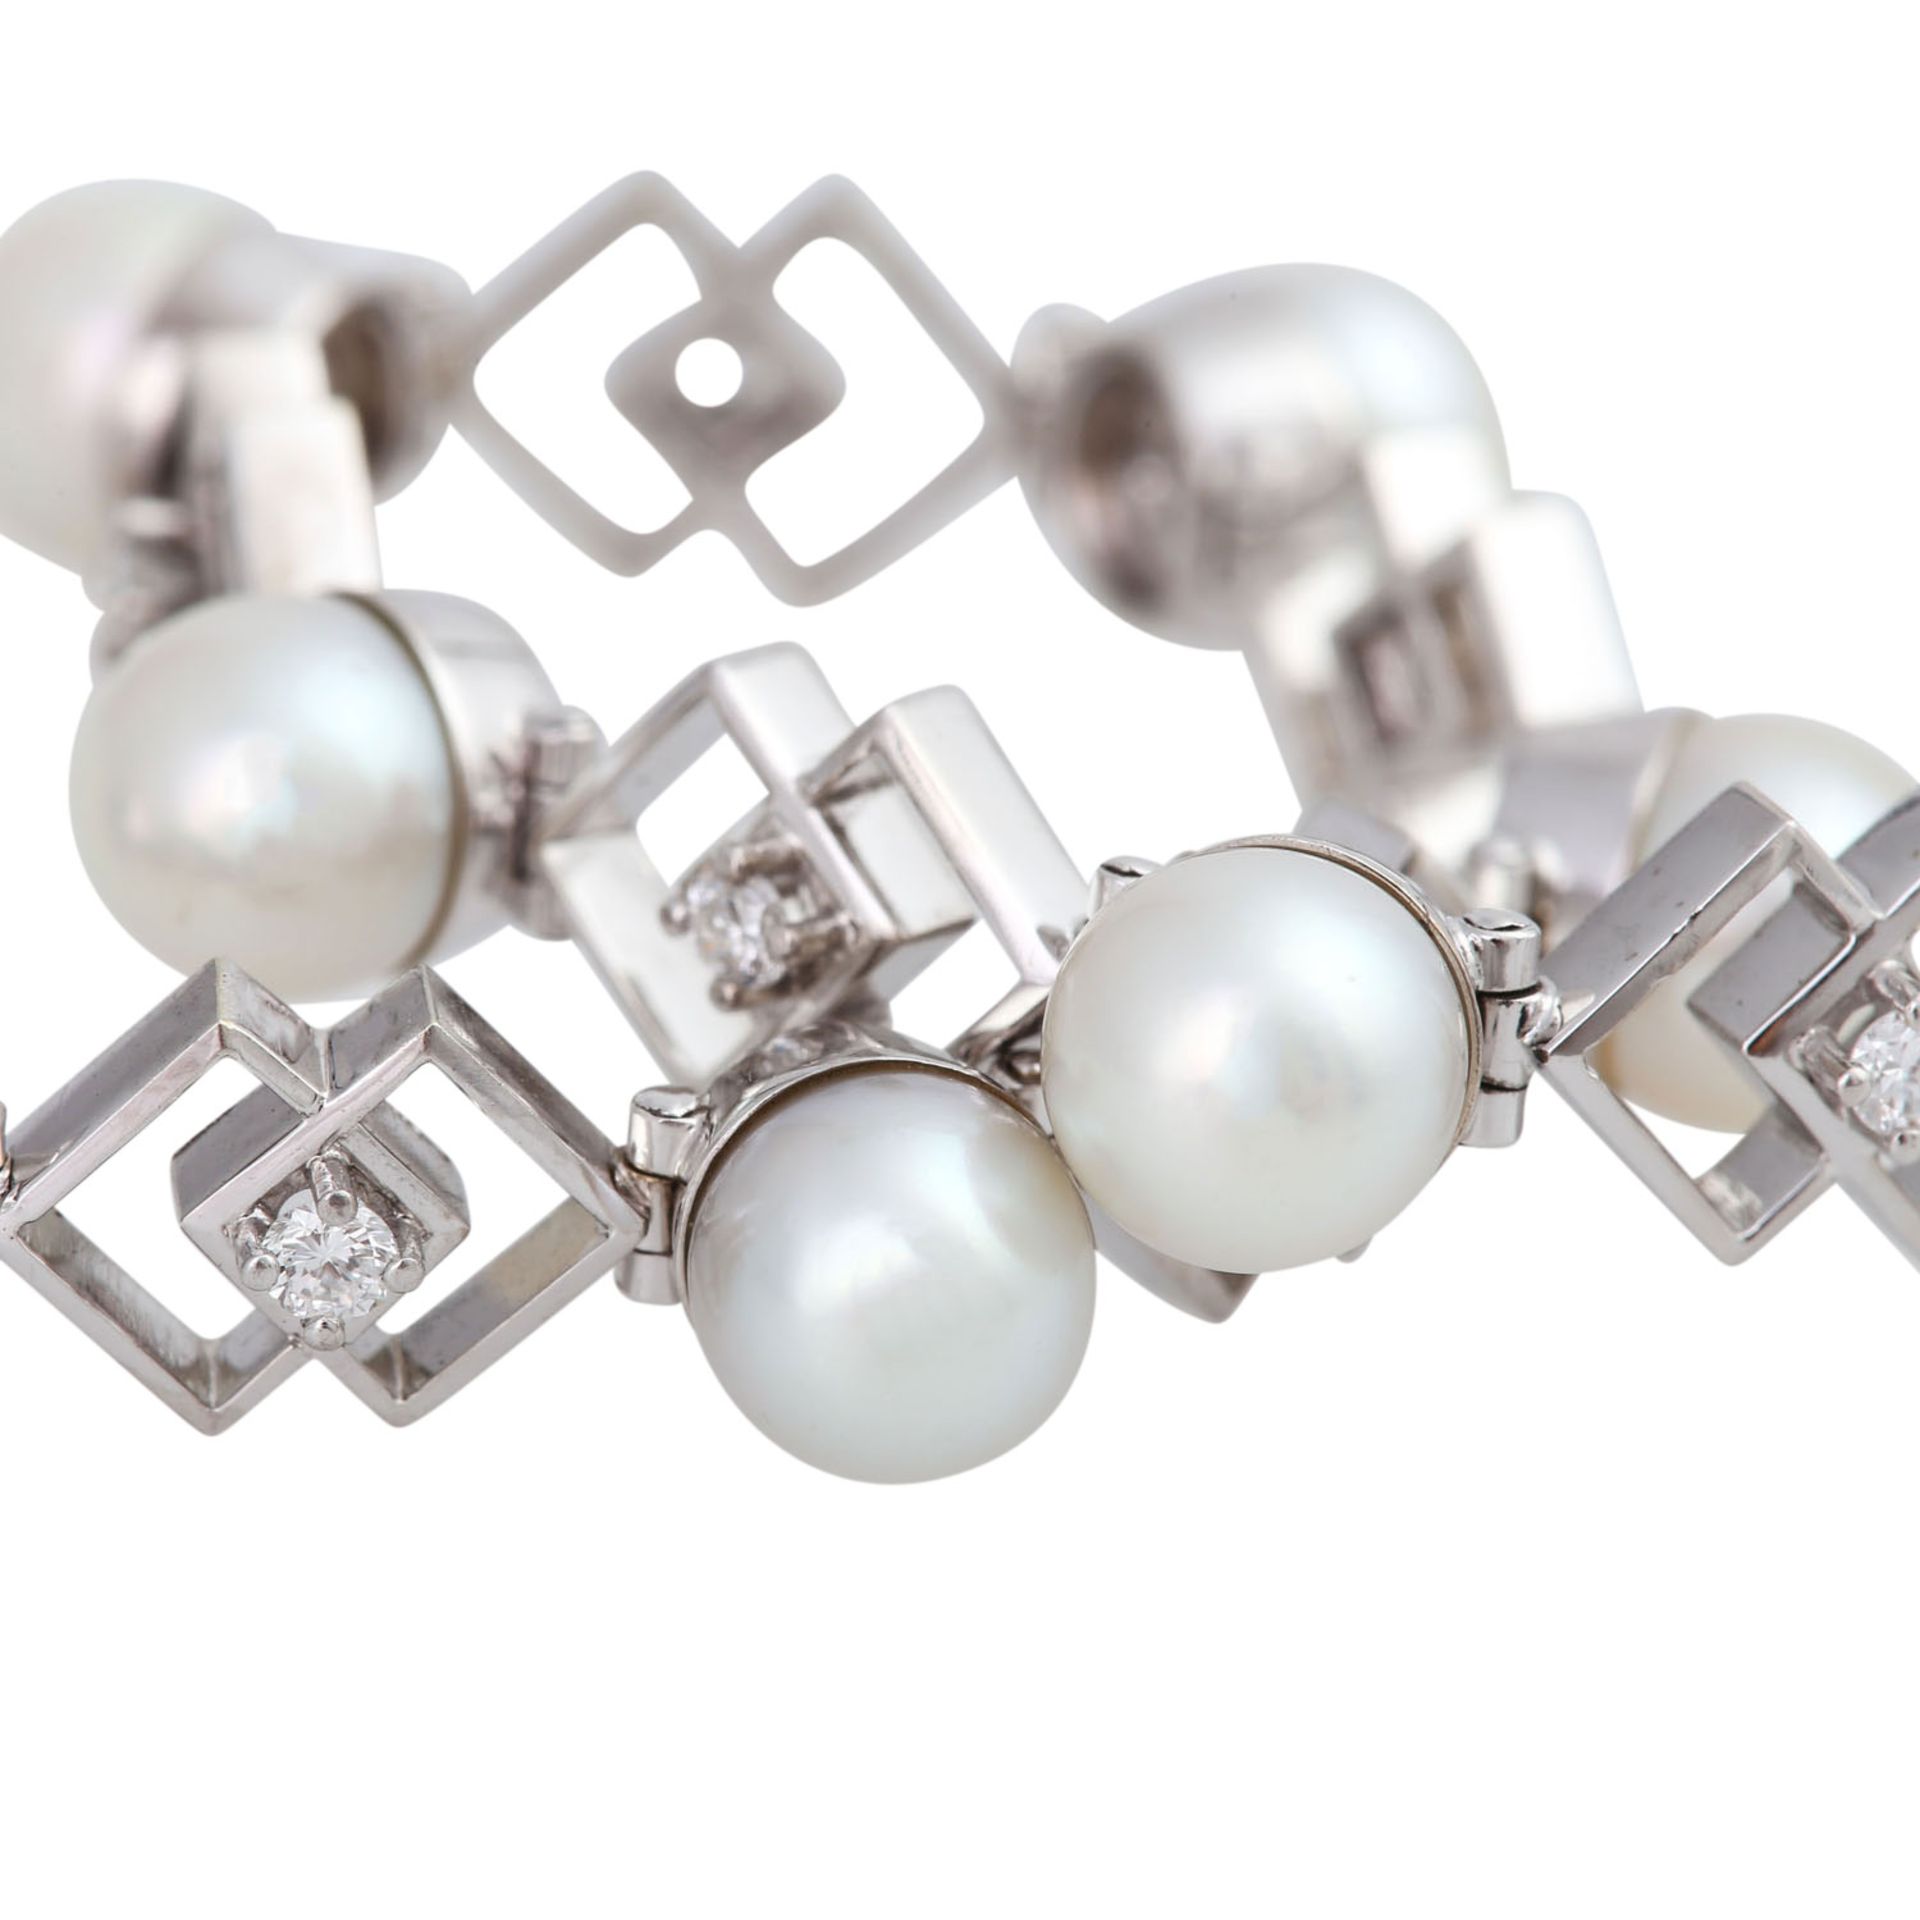 Armband mit Perlen und Brillantenvon zus. ca. 0,4 ct, gute Farbe u. Reinheit, Zuchtperlen ca. 6,2- - Bild 5 aus 5